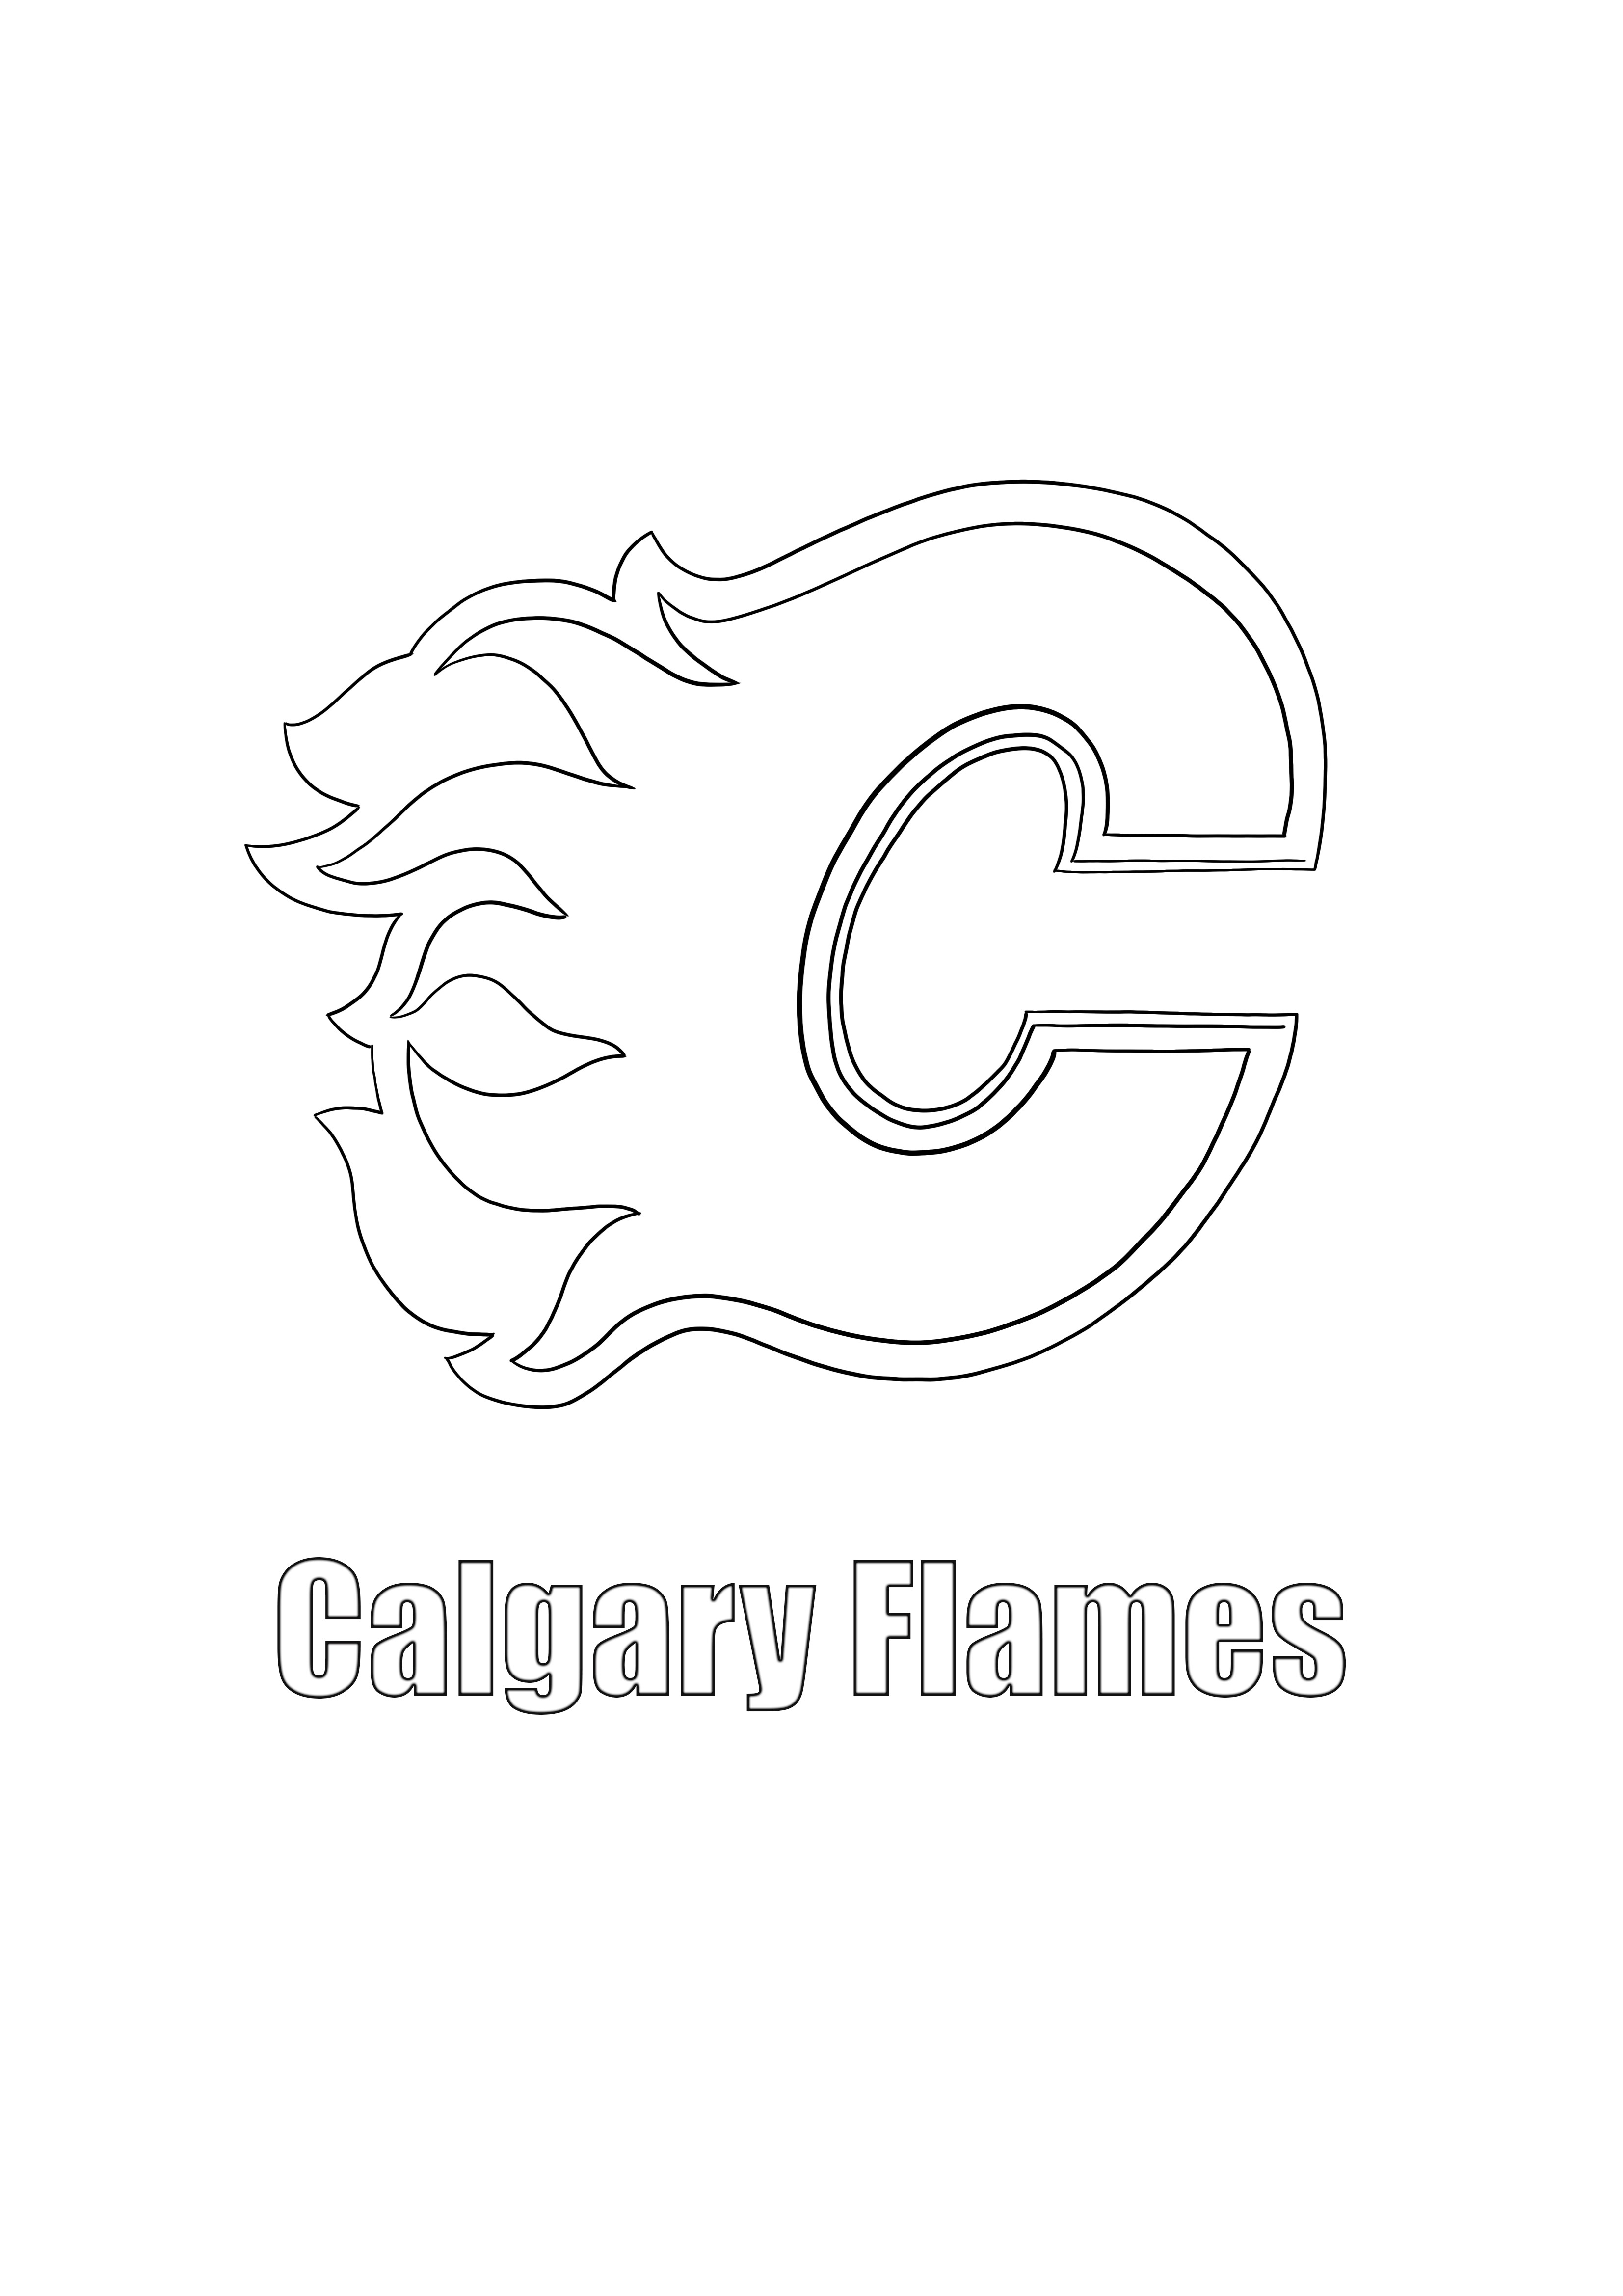 Logo Calgary Flames pentru imprimare și colorare gratuit